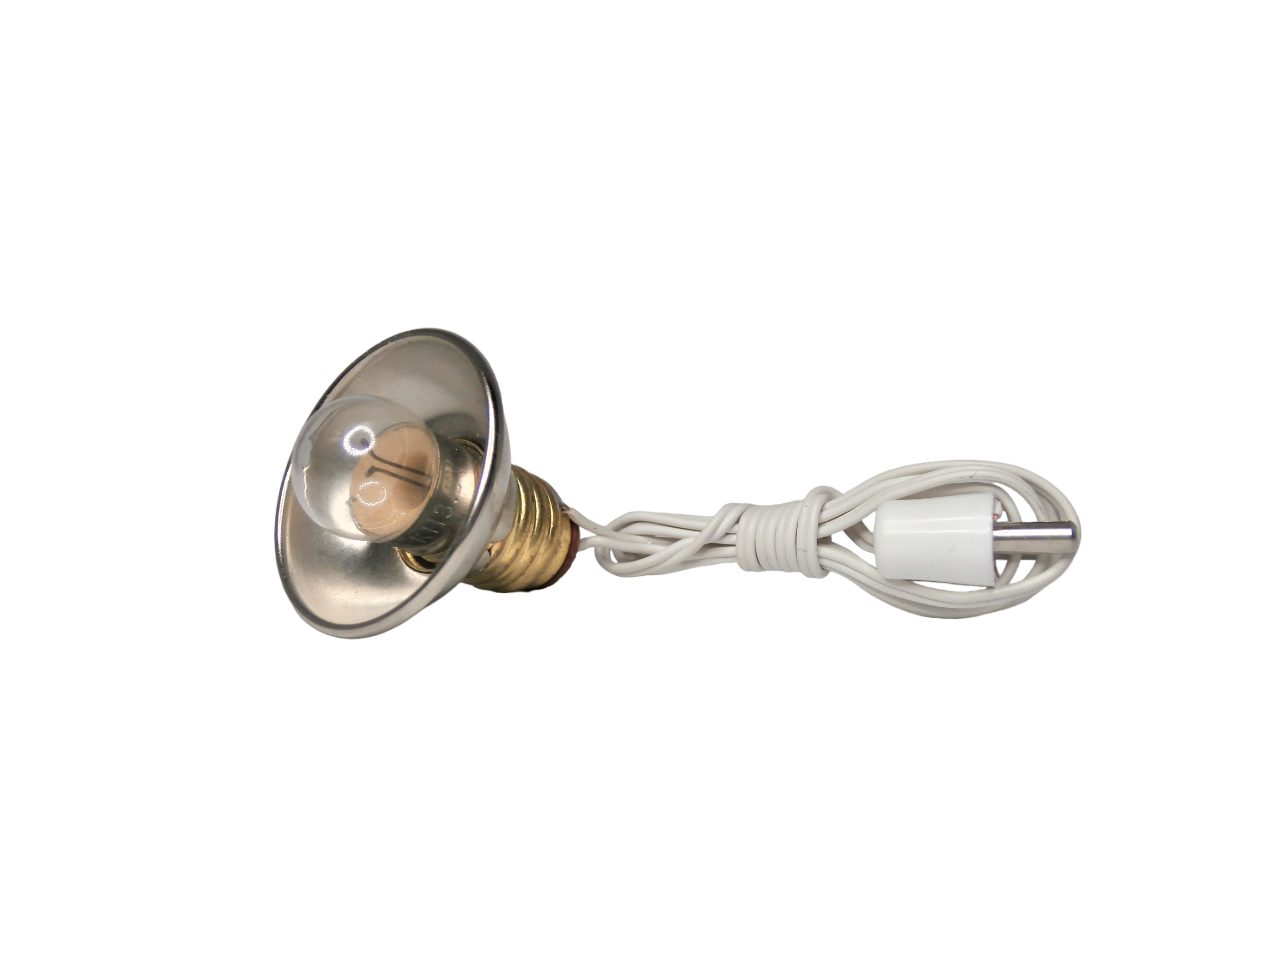 Krippenbeleuchtung Kugellampe mit Kabel und Stecker, weiß